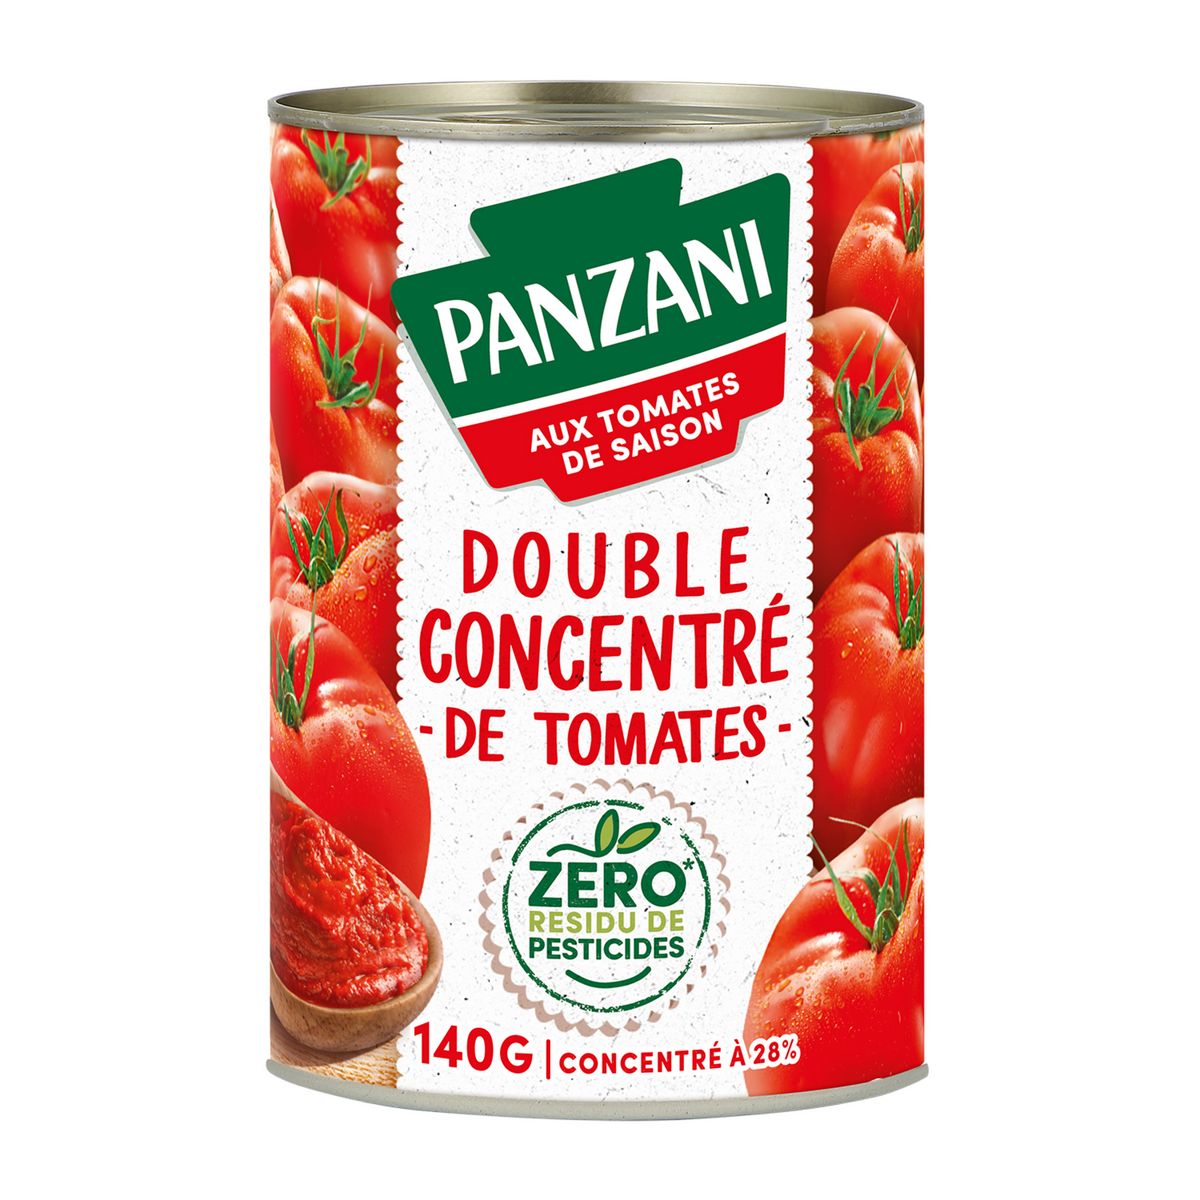 PANZANI Double concentré de tomates zéro résidu de pesticide en boîte 140g